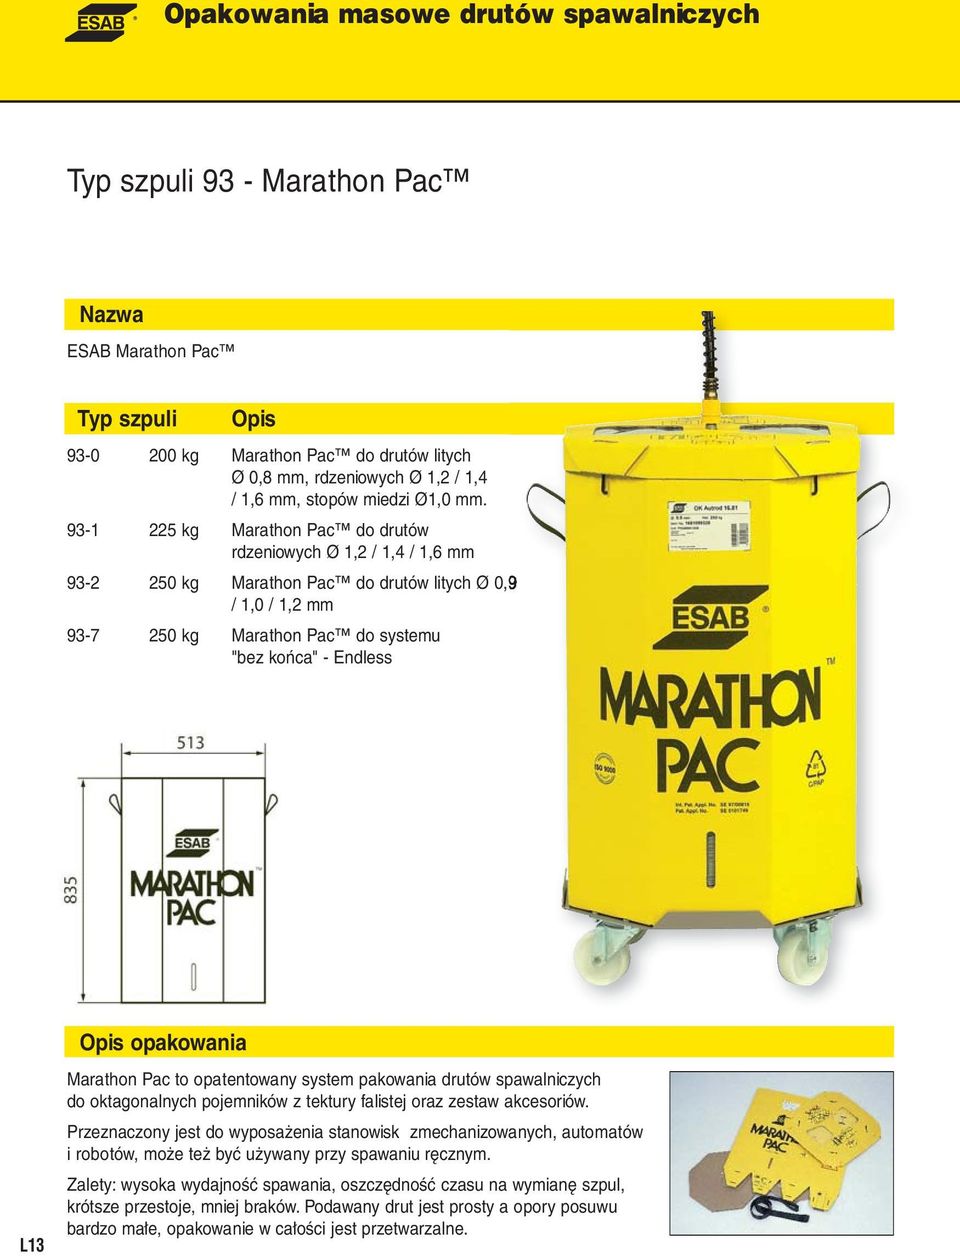 opakowania Marathon Pac to opatentowany system pakowania drutów spawalniczych do oktagonalnych pojemników z tektury falistej oraz zestaw akcesoriów.